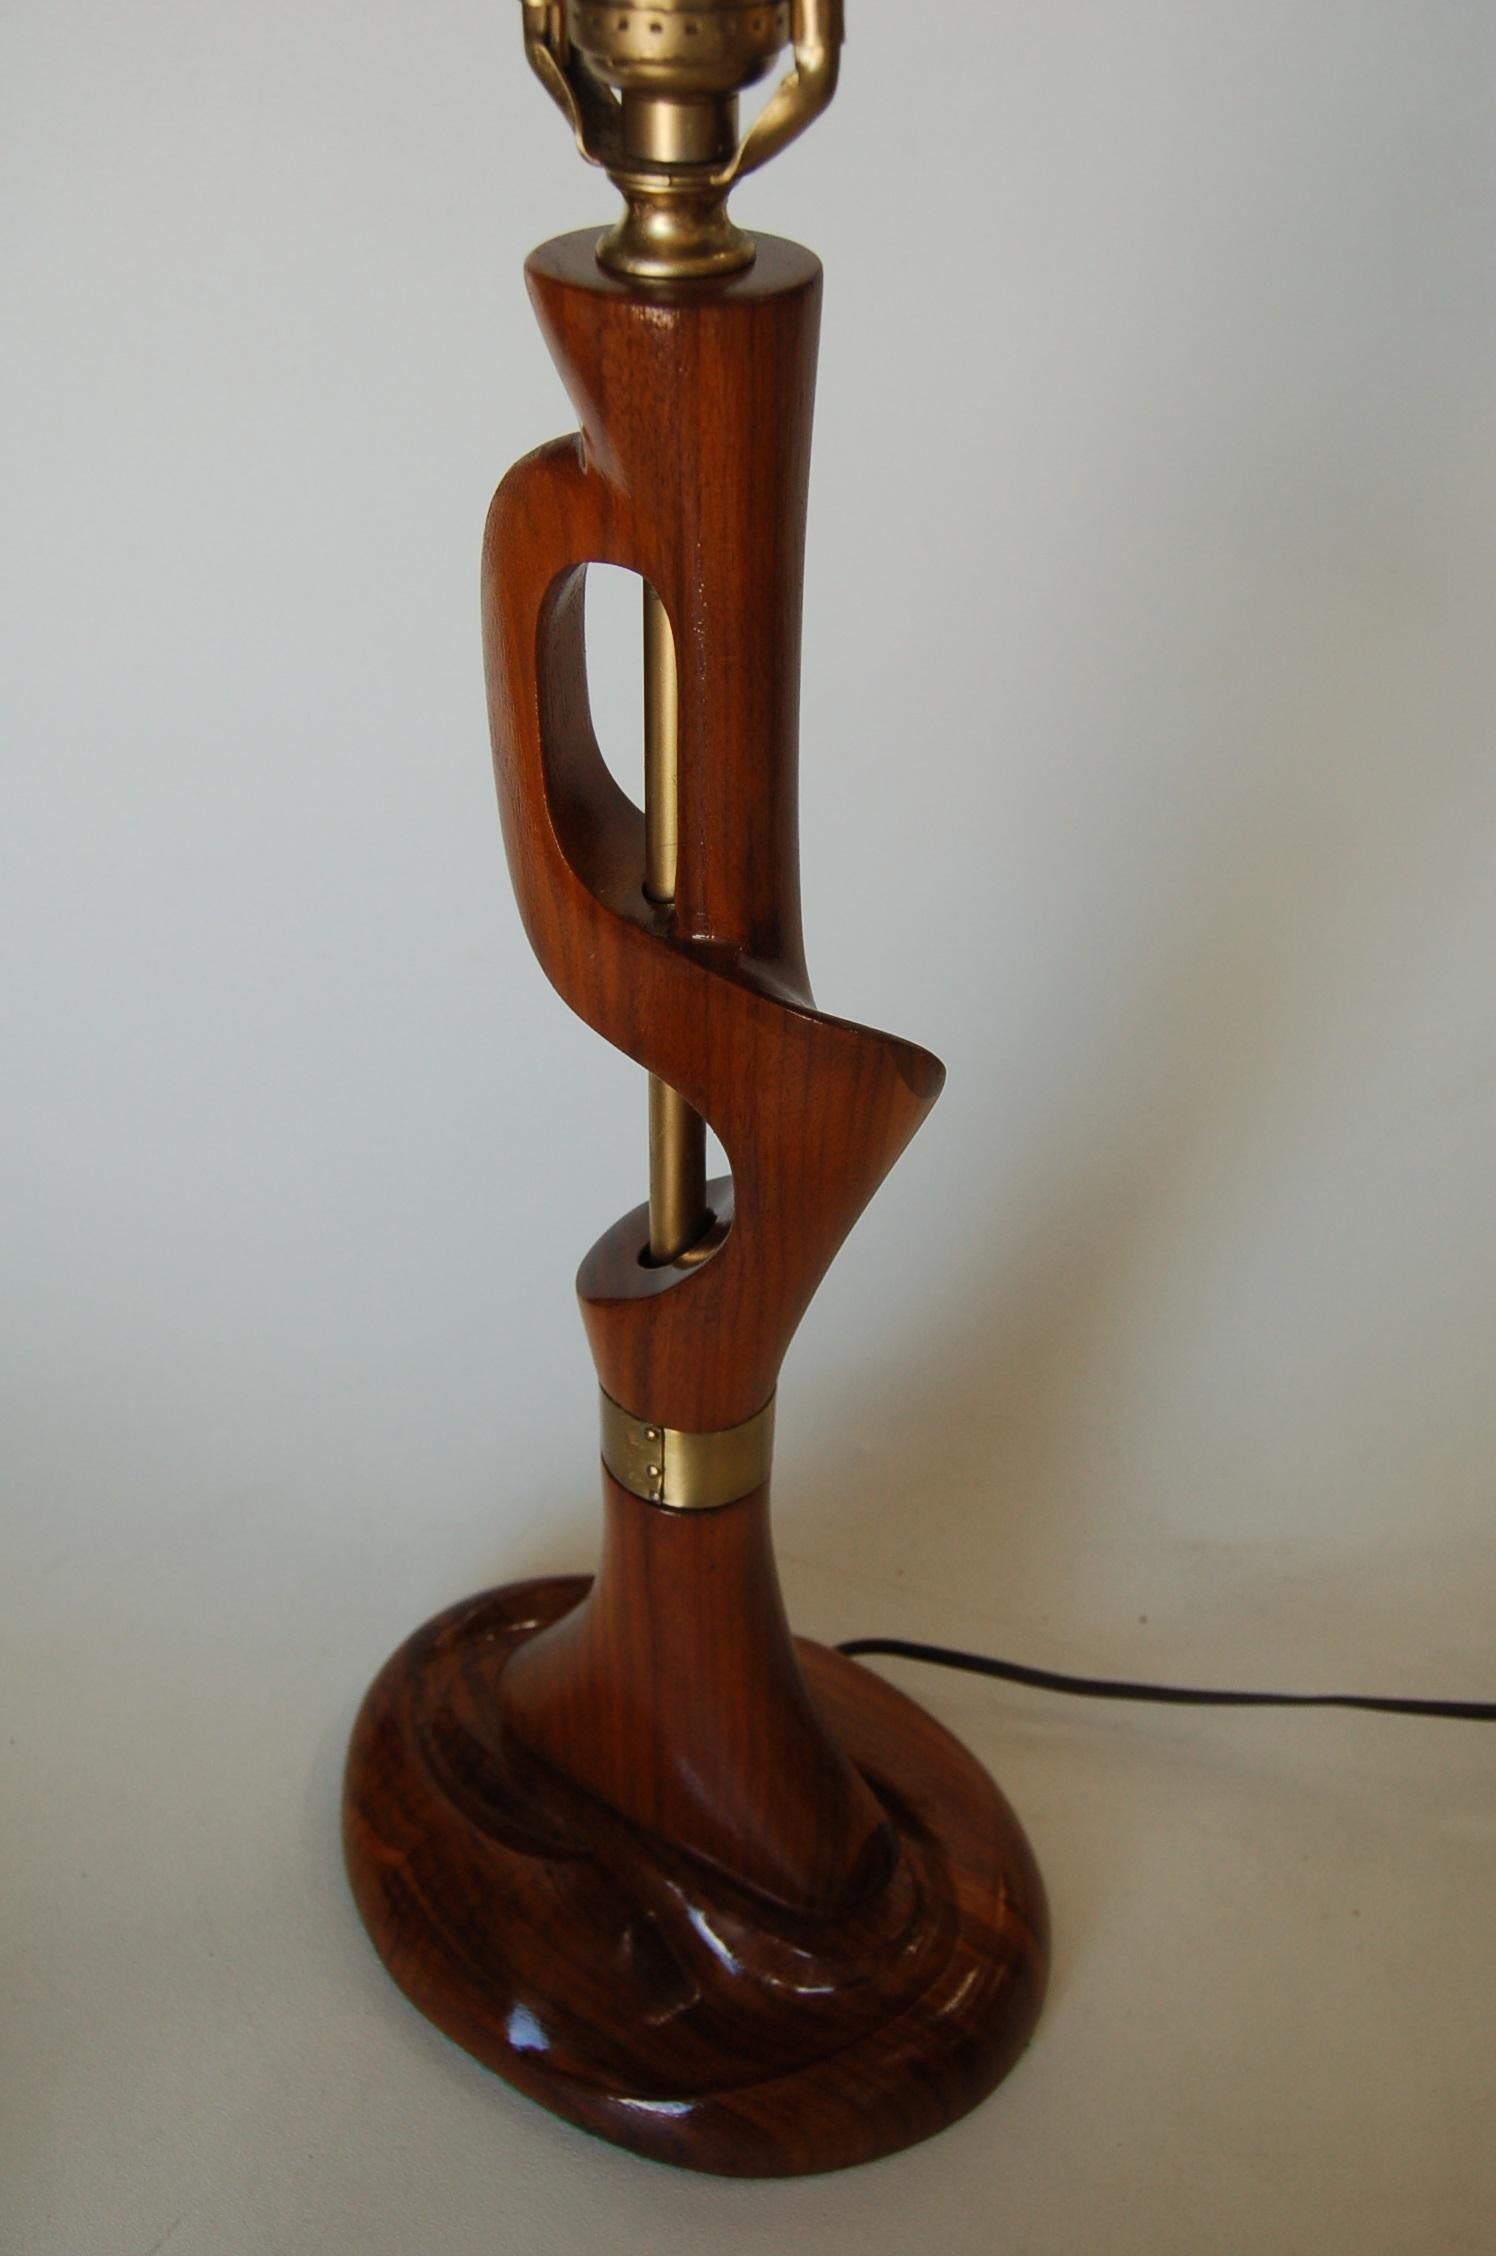 Modernistische Tischlampe aus geschnitztem Mahagoni und Messingdetails mit Nagelkopf von Jascha Heifetz.

Maße: 9